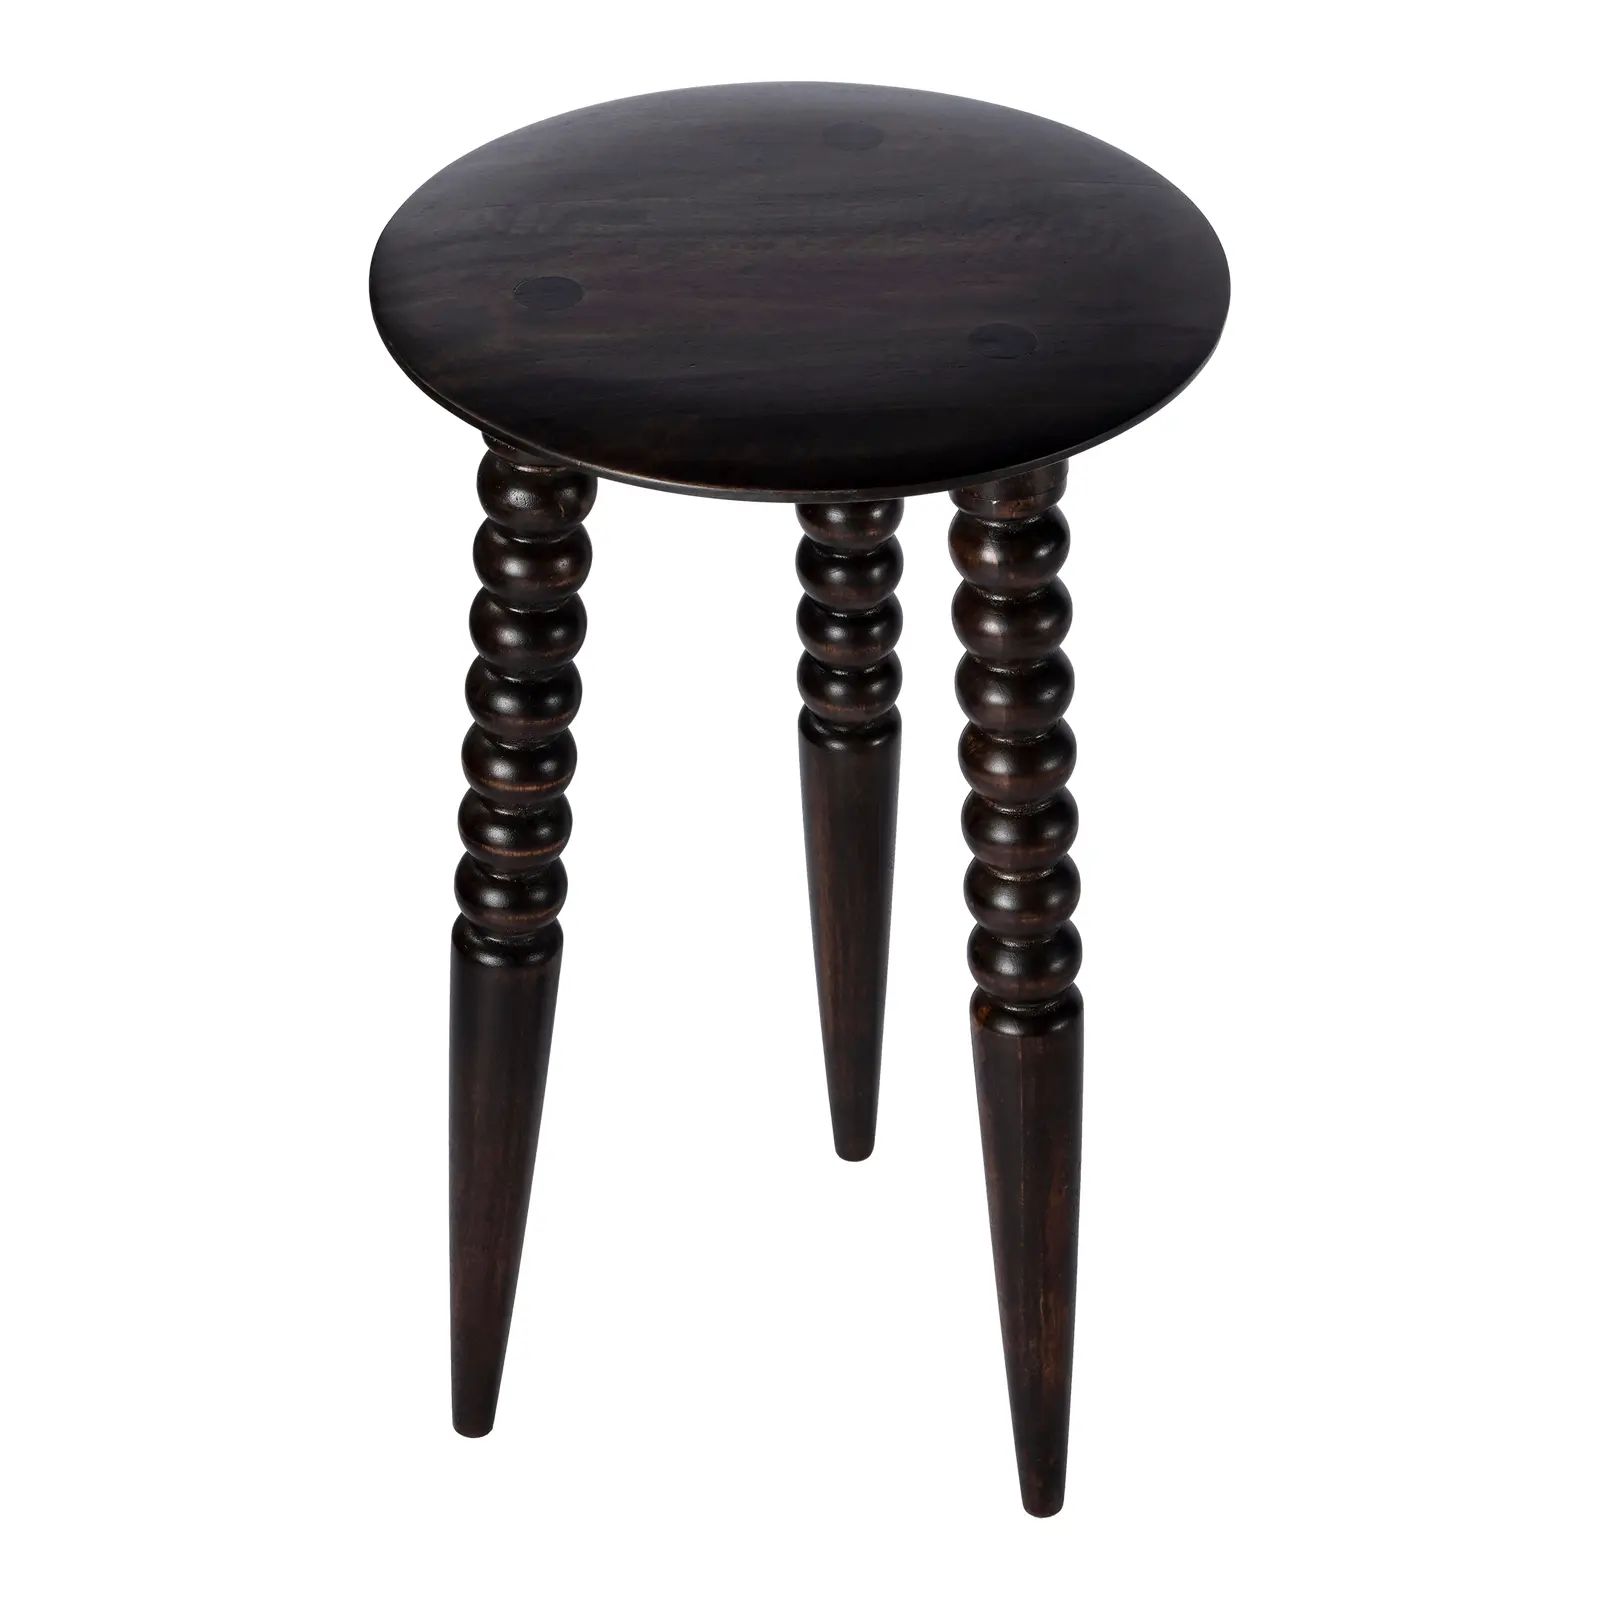 Fluornoy Wood Accent Table, Dark Brown | Chairish